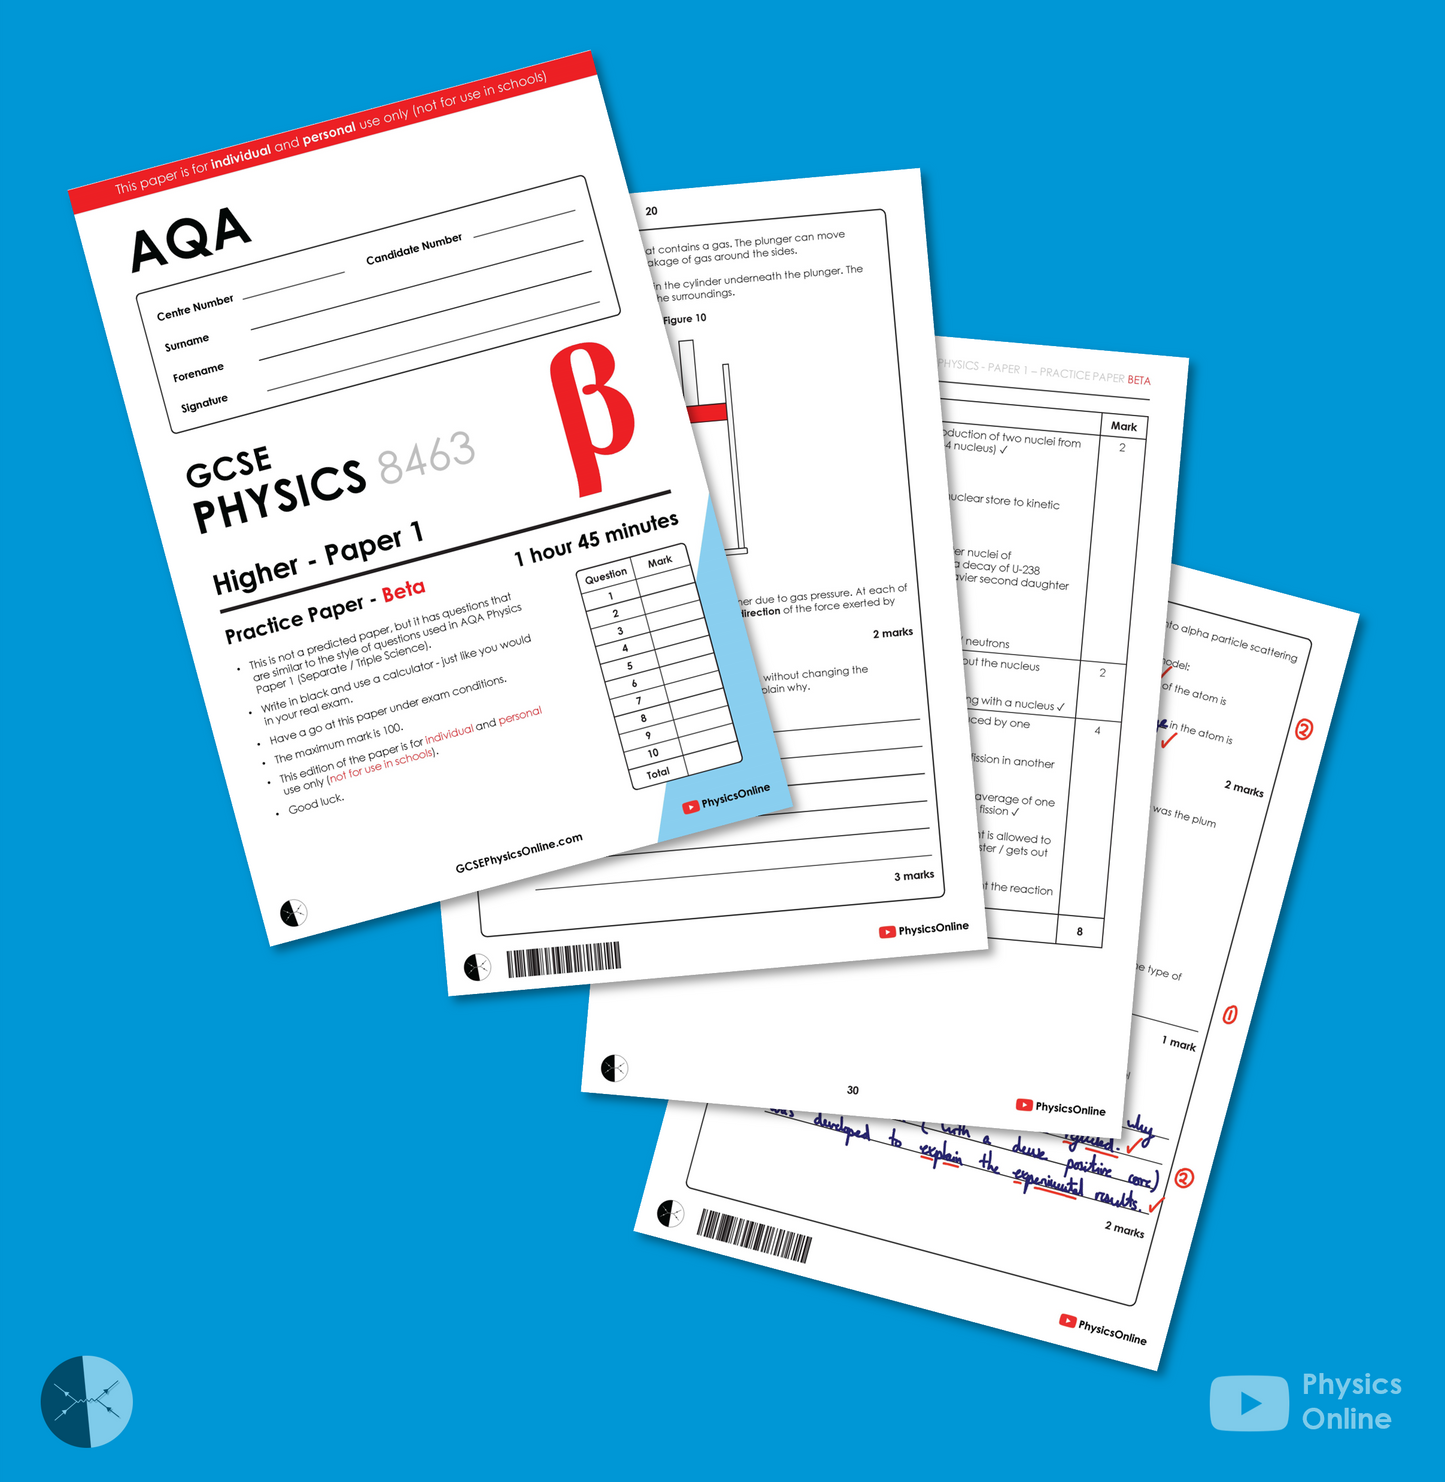 AQA Practice Paper | Paper 1 - Beta | Individual Issue | GCSE Physics